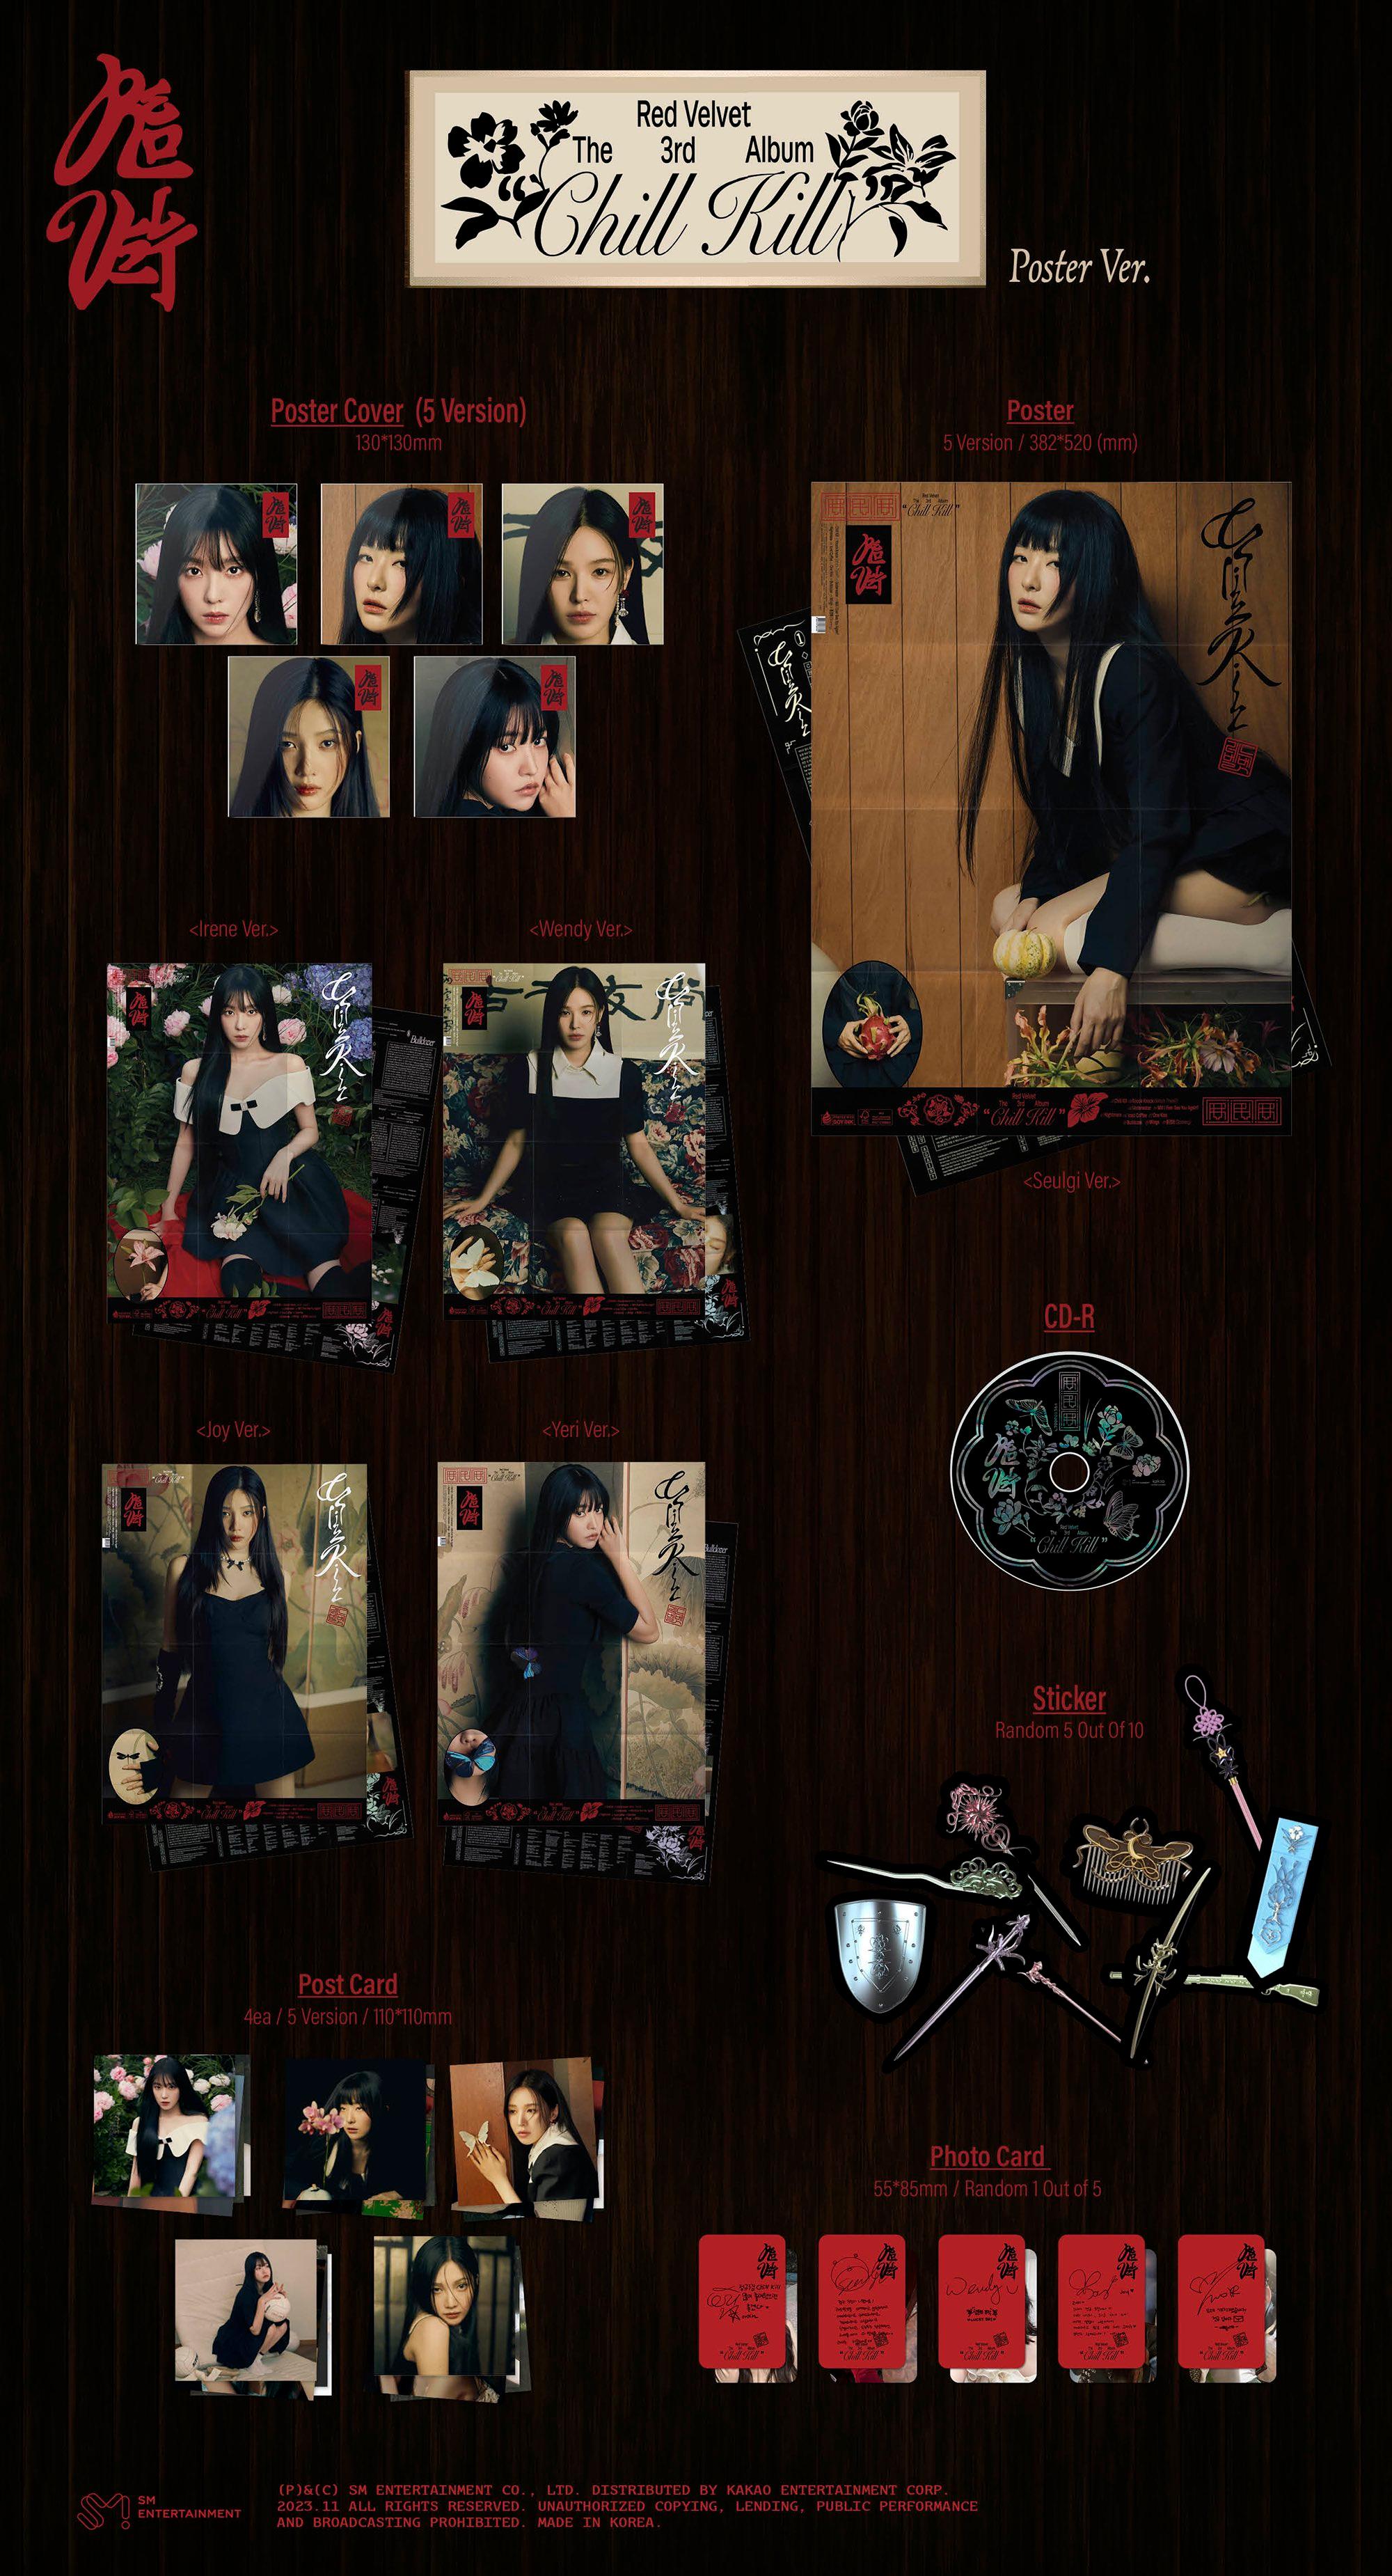 Red Velvet Album Vol. 3 – Chill Kill (Poster Ver.) (Random) - KKANG